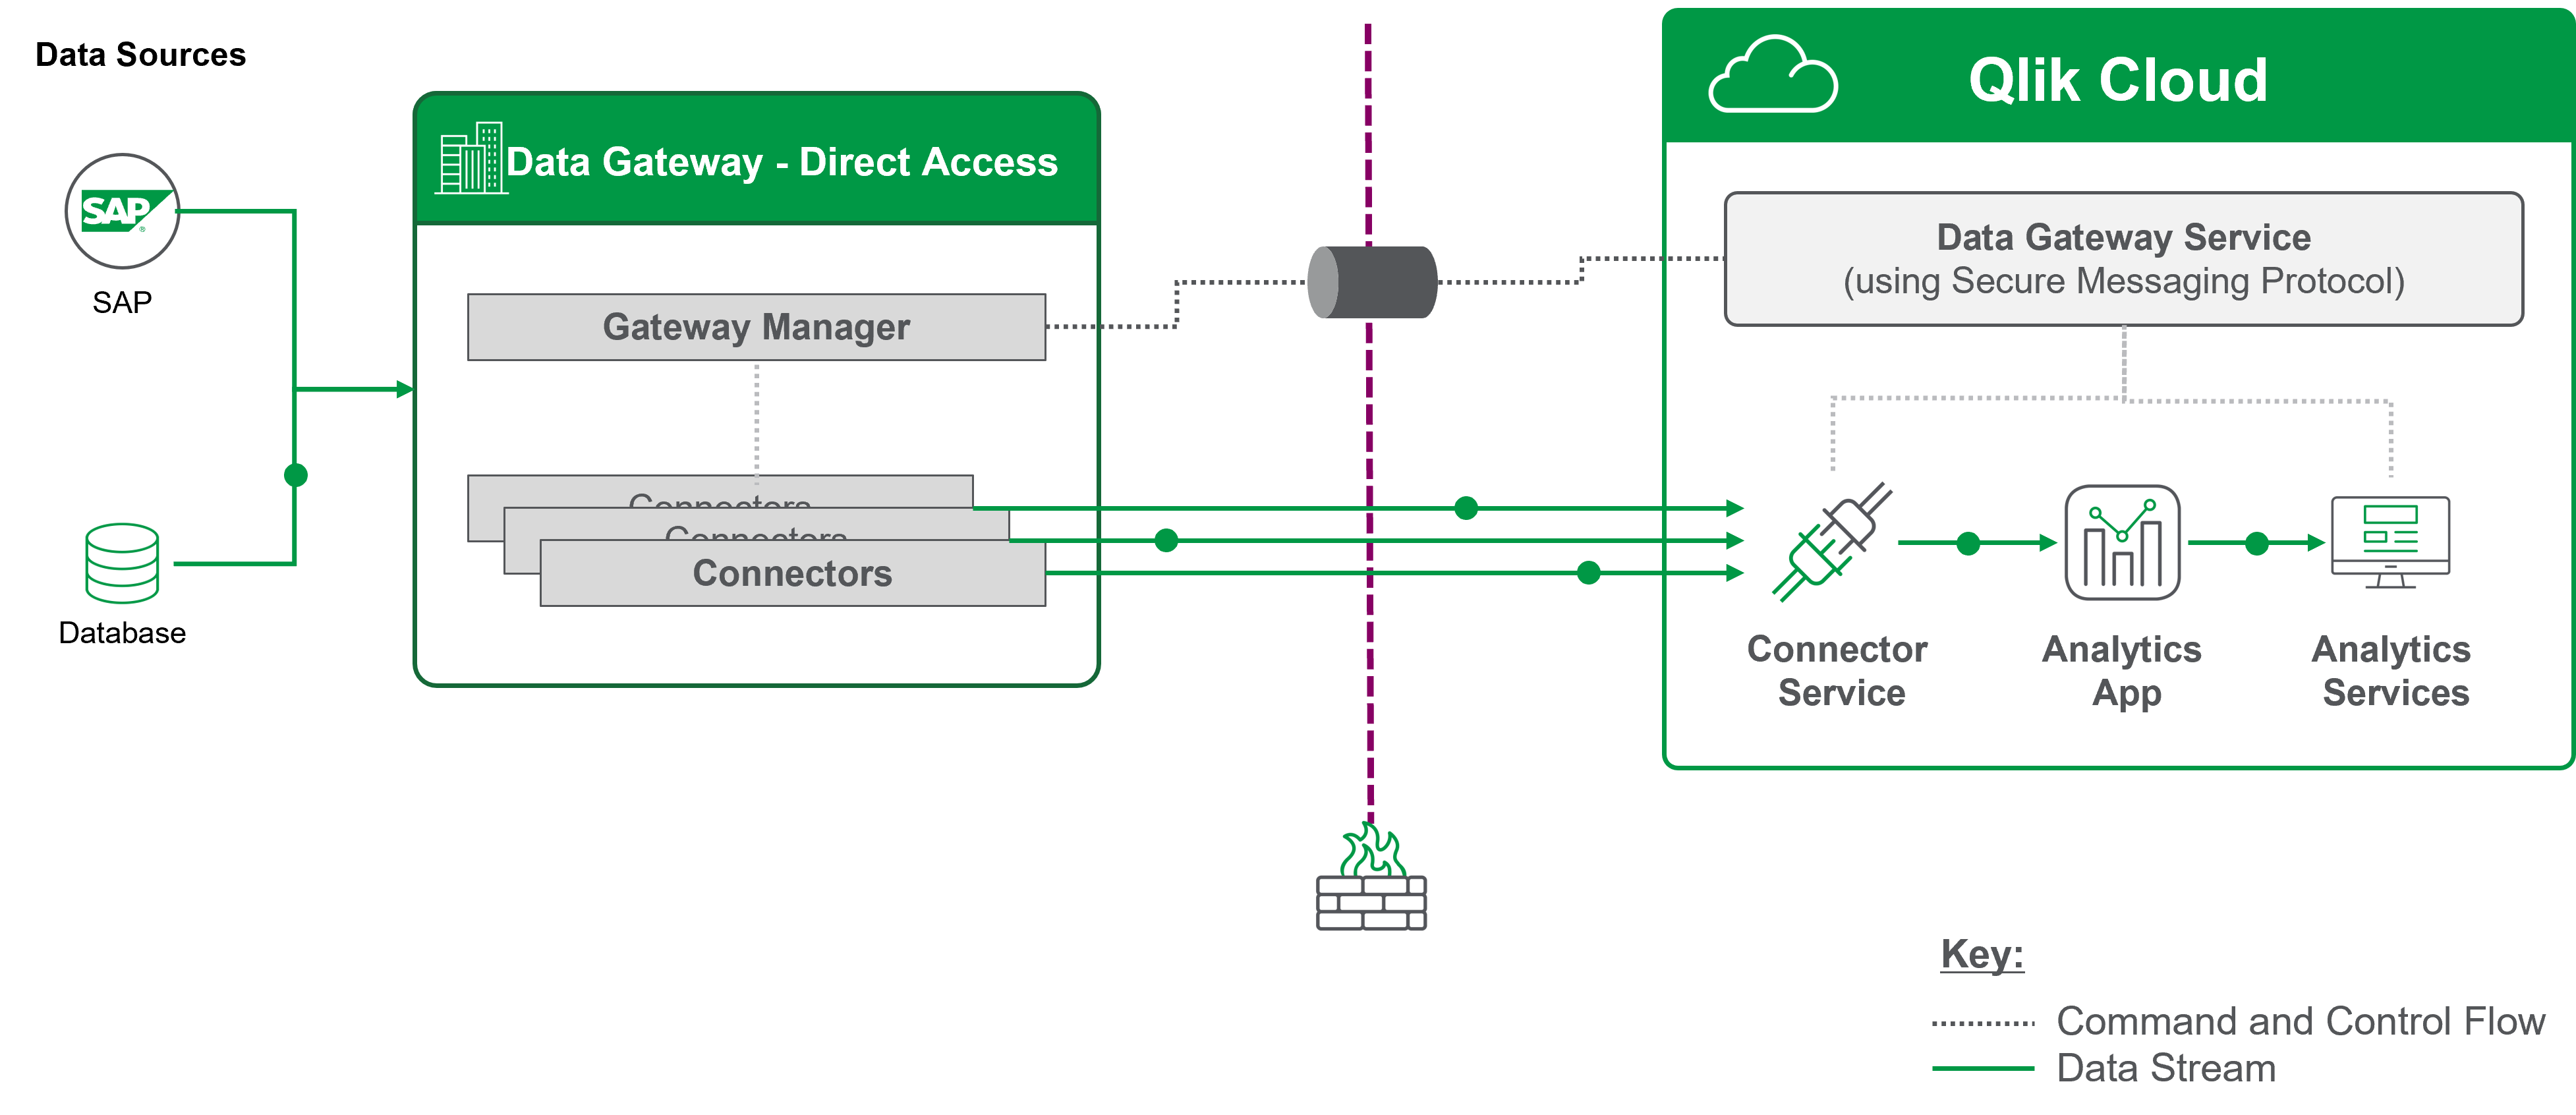 Diagrama de la arquitectura de la pasarela de acceso directo